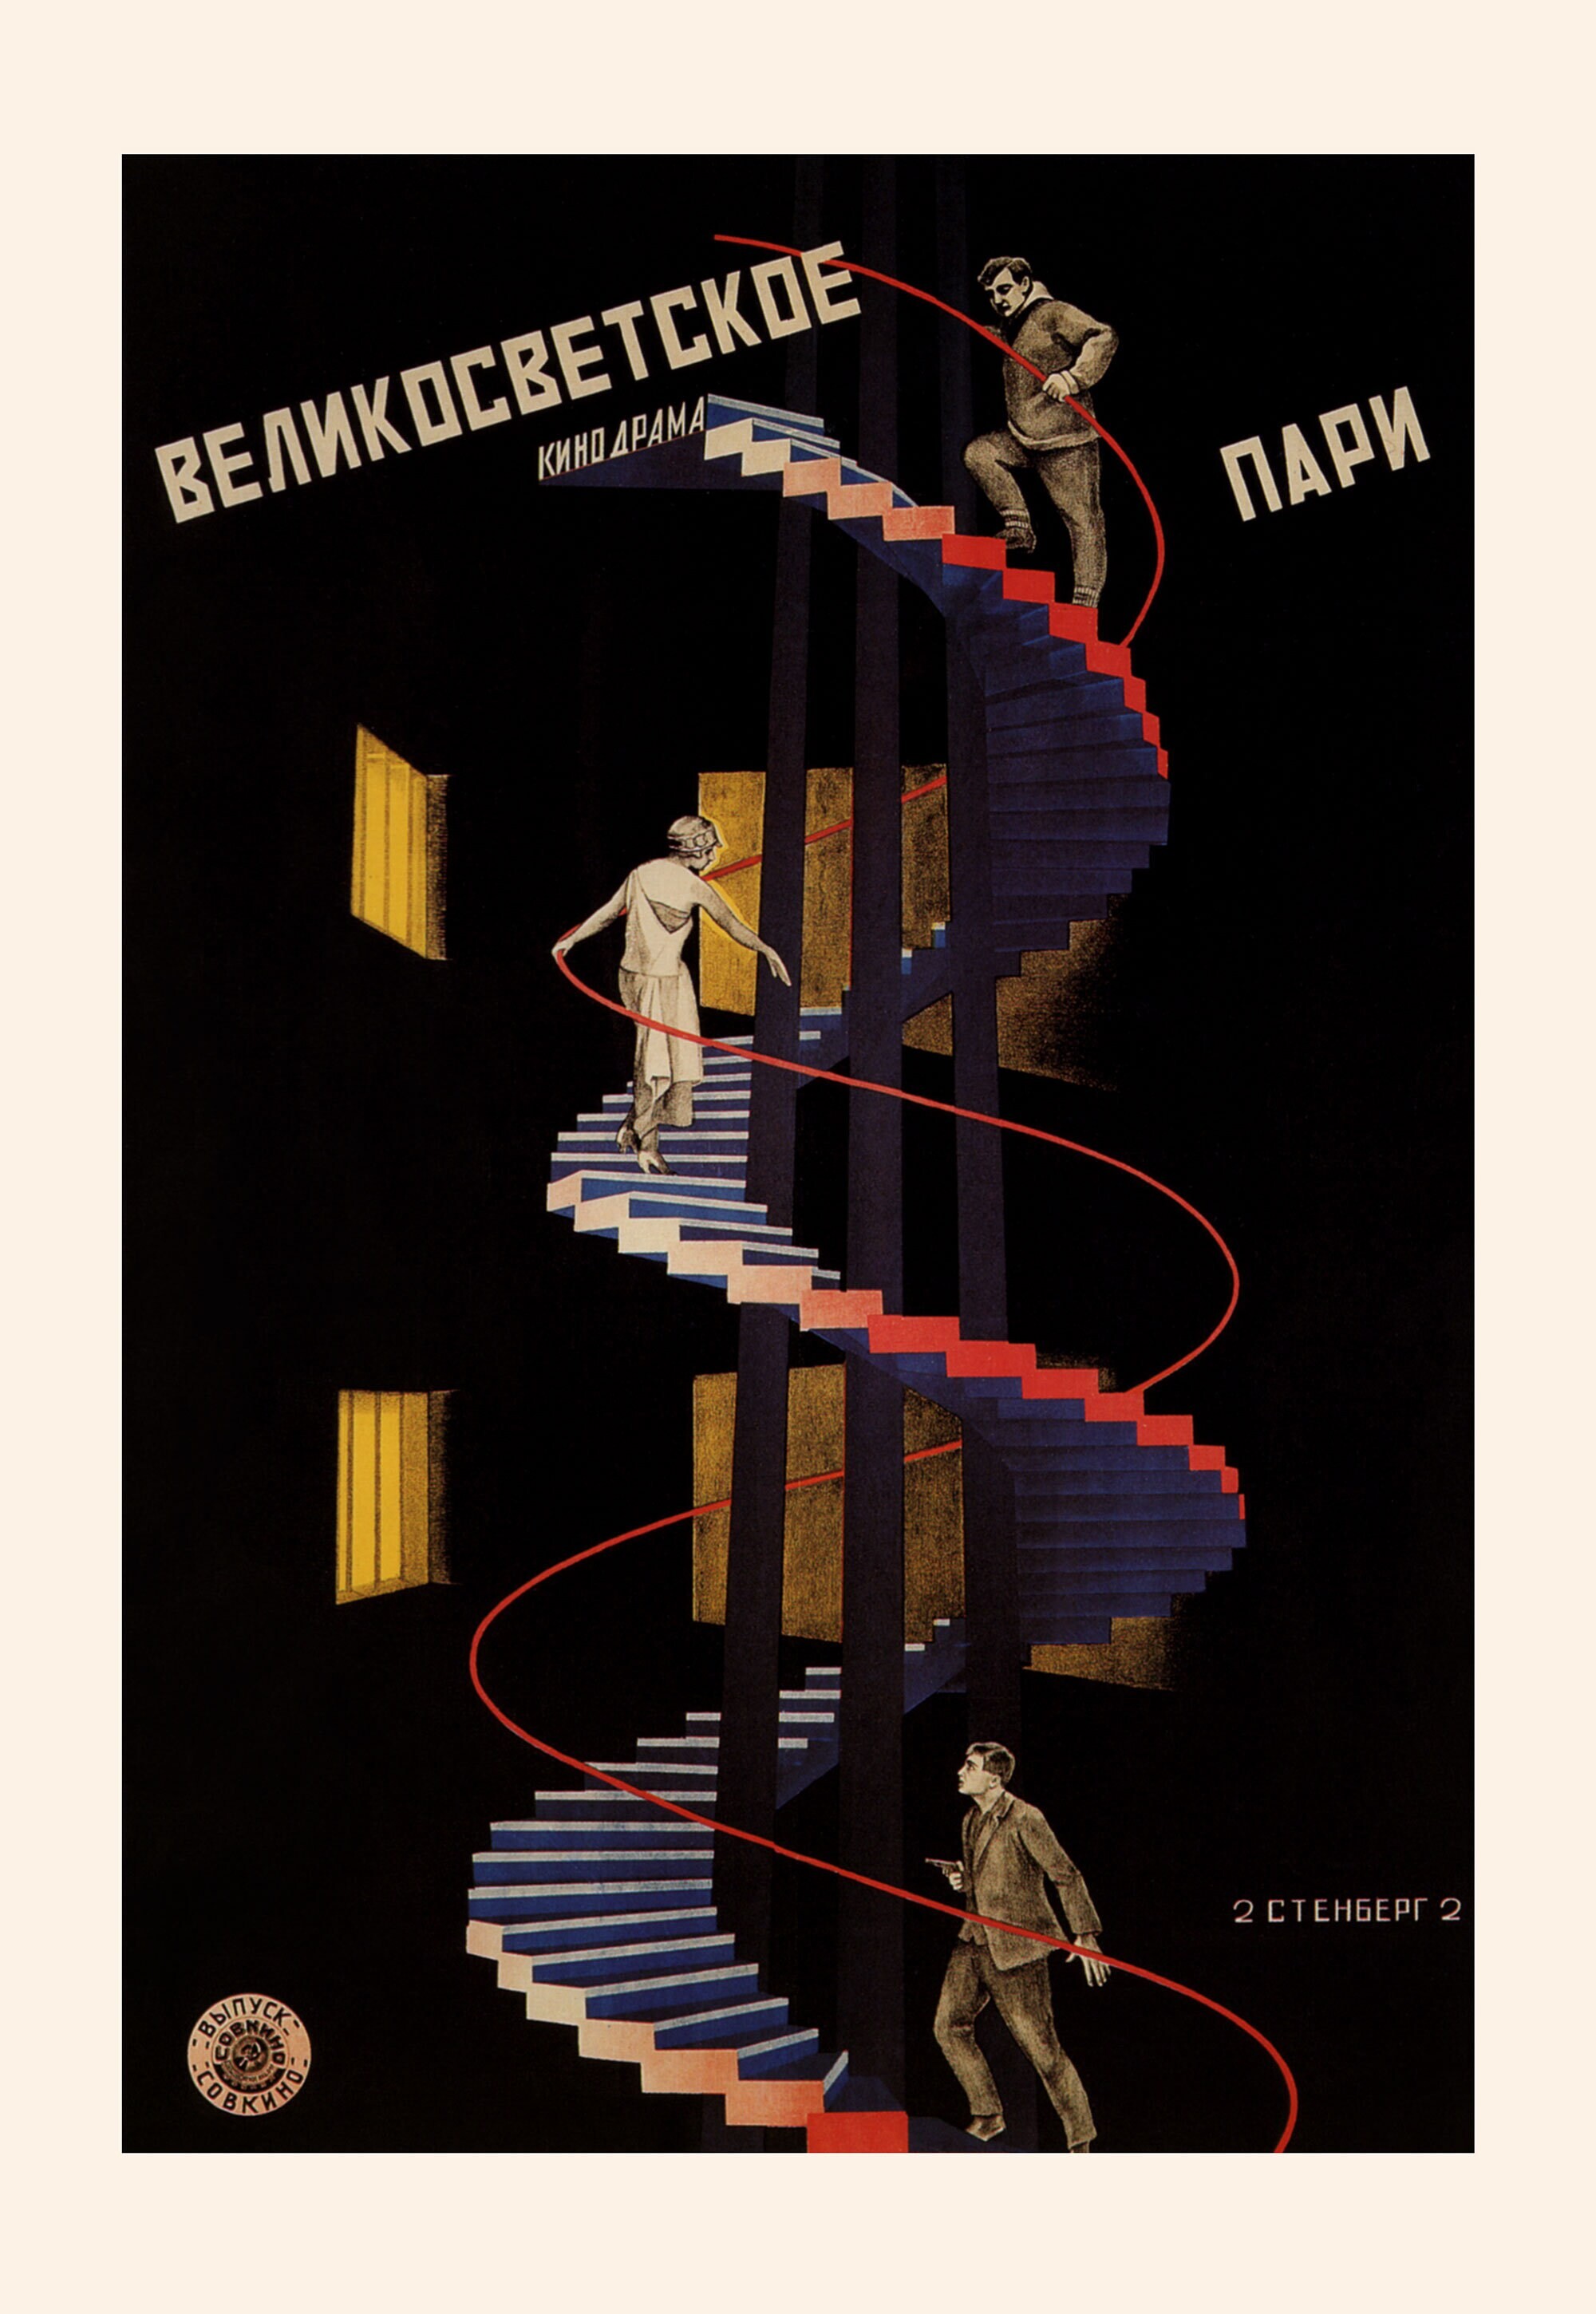 Великосветское пари, 1923 год,  режиссёр Карл Фрёлих, плакат к фильму, авторы Владимир и Георгий Стенберги (авангардное советское искусство, 1920-е)